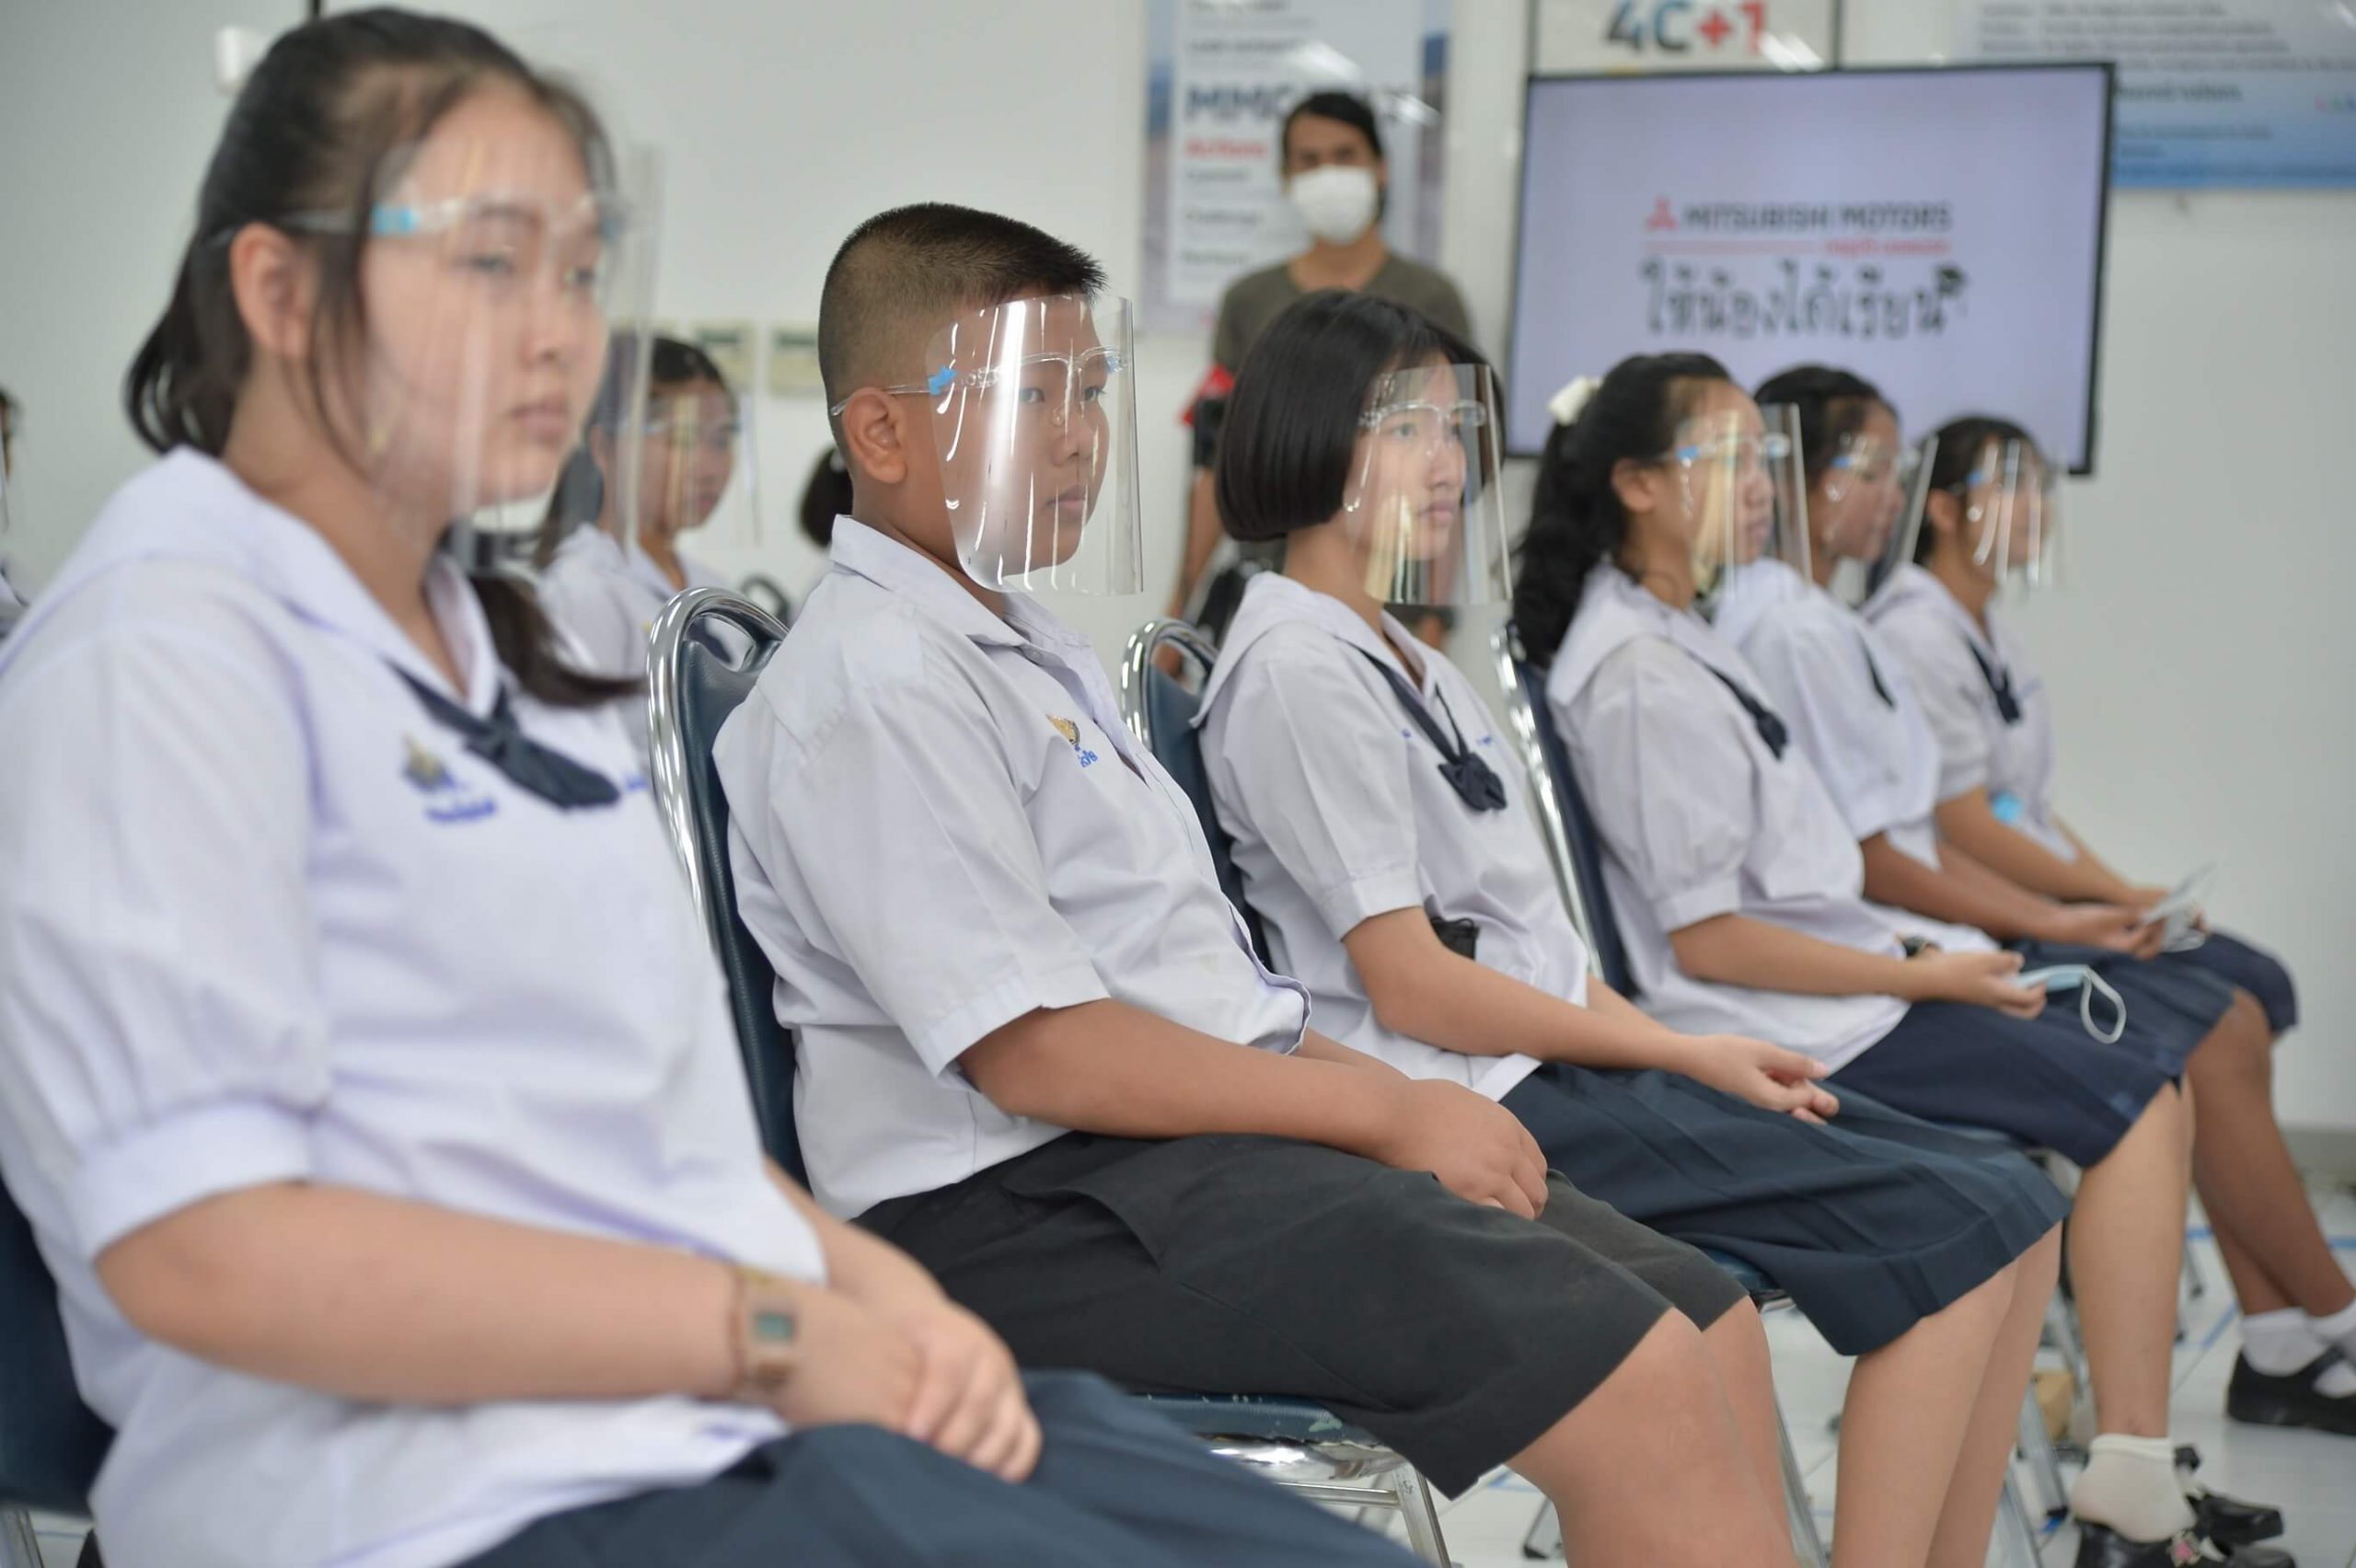 มิตซูบิชิ มอเตอร์ส ประเทศไทย มอบทุนการศึกษา ประจำปี 2563 เพื่อโอกาสทางการศึกษาแก่เด็กนักเรียน